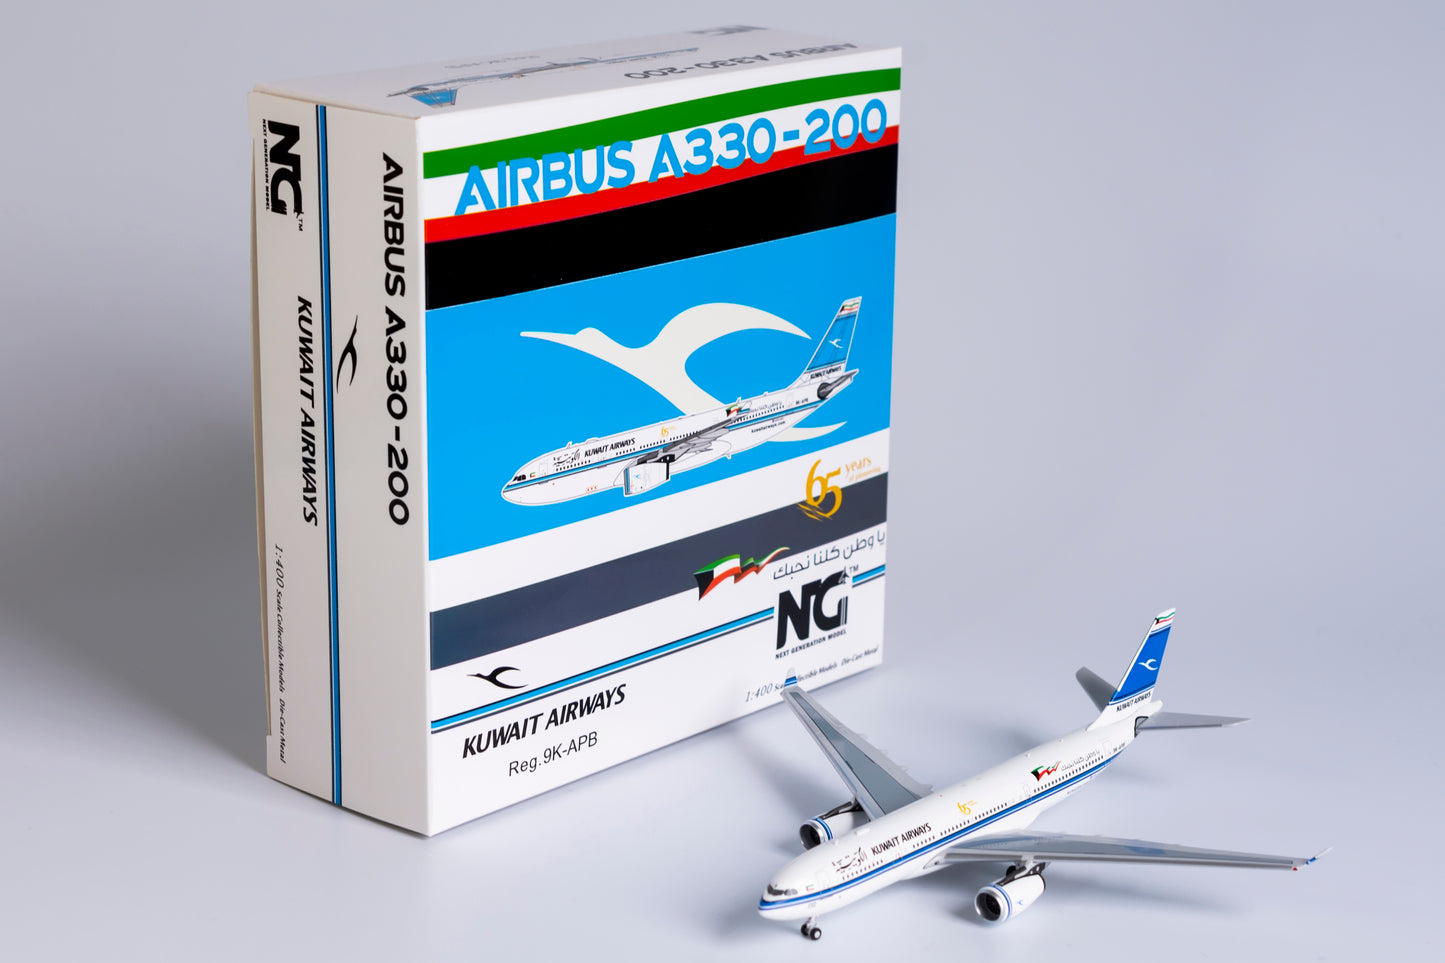 1:400 NG Models Kuwait Airways Airbus A330-200 "65 years Sticker" 9K-APB NG61040